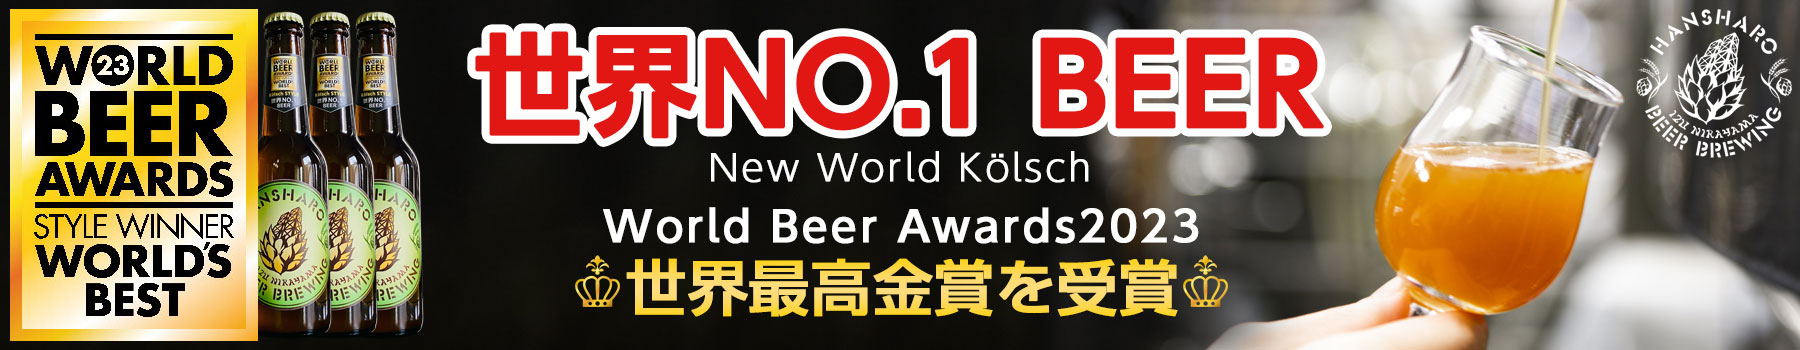 世界No.1反射炉ビール